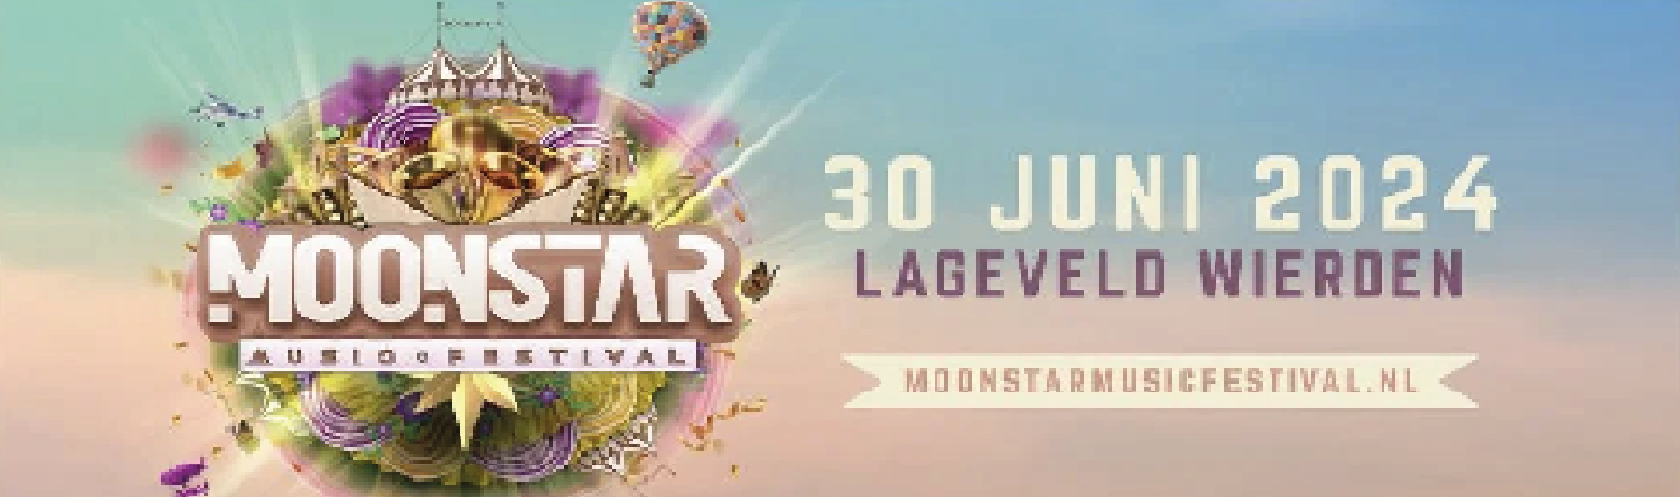 Moonstar Music Festival banner_large_desktop